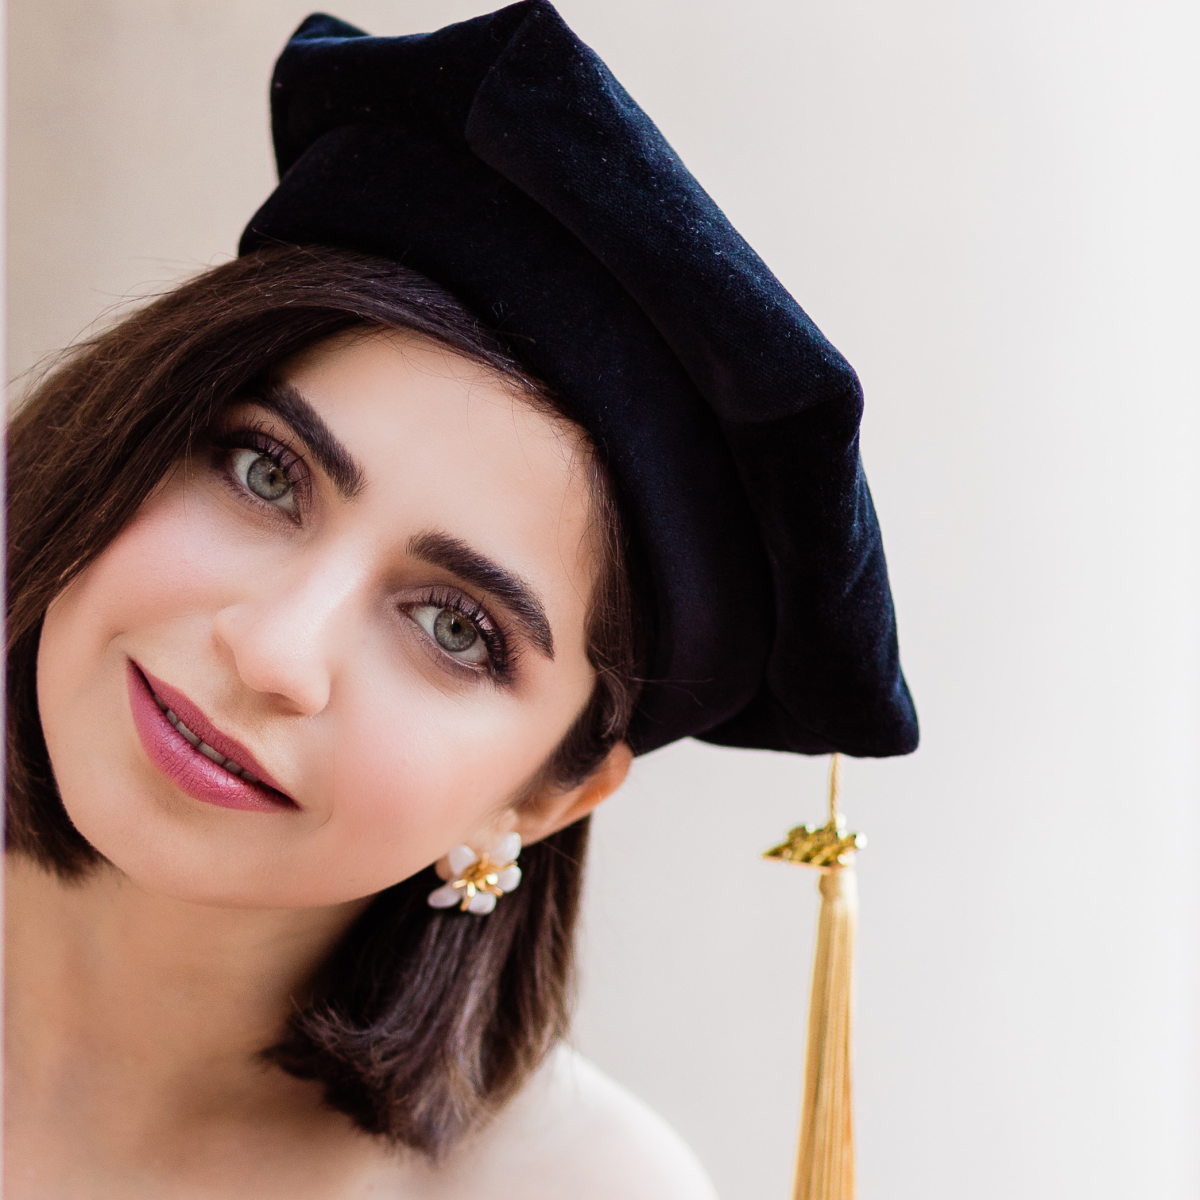 Mahada wearing a graduation cap 